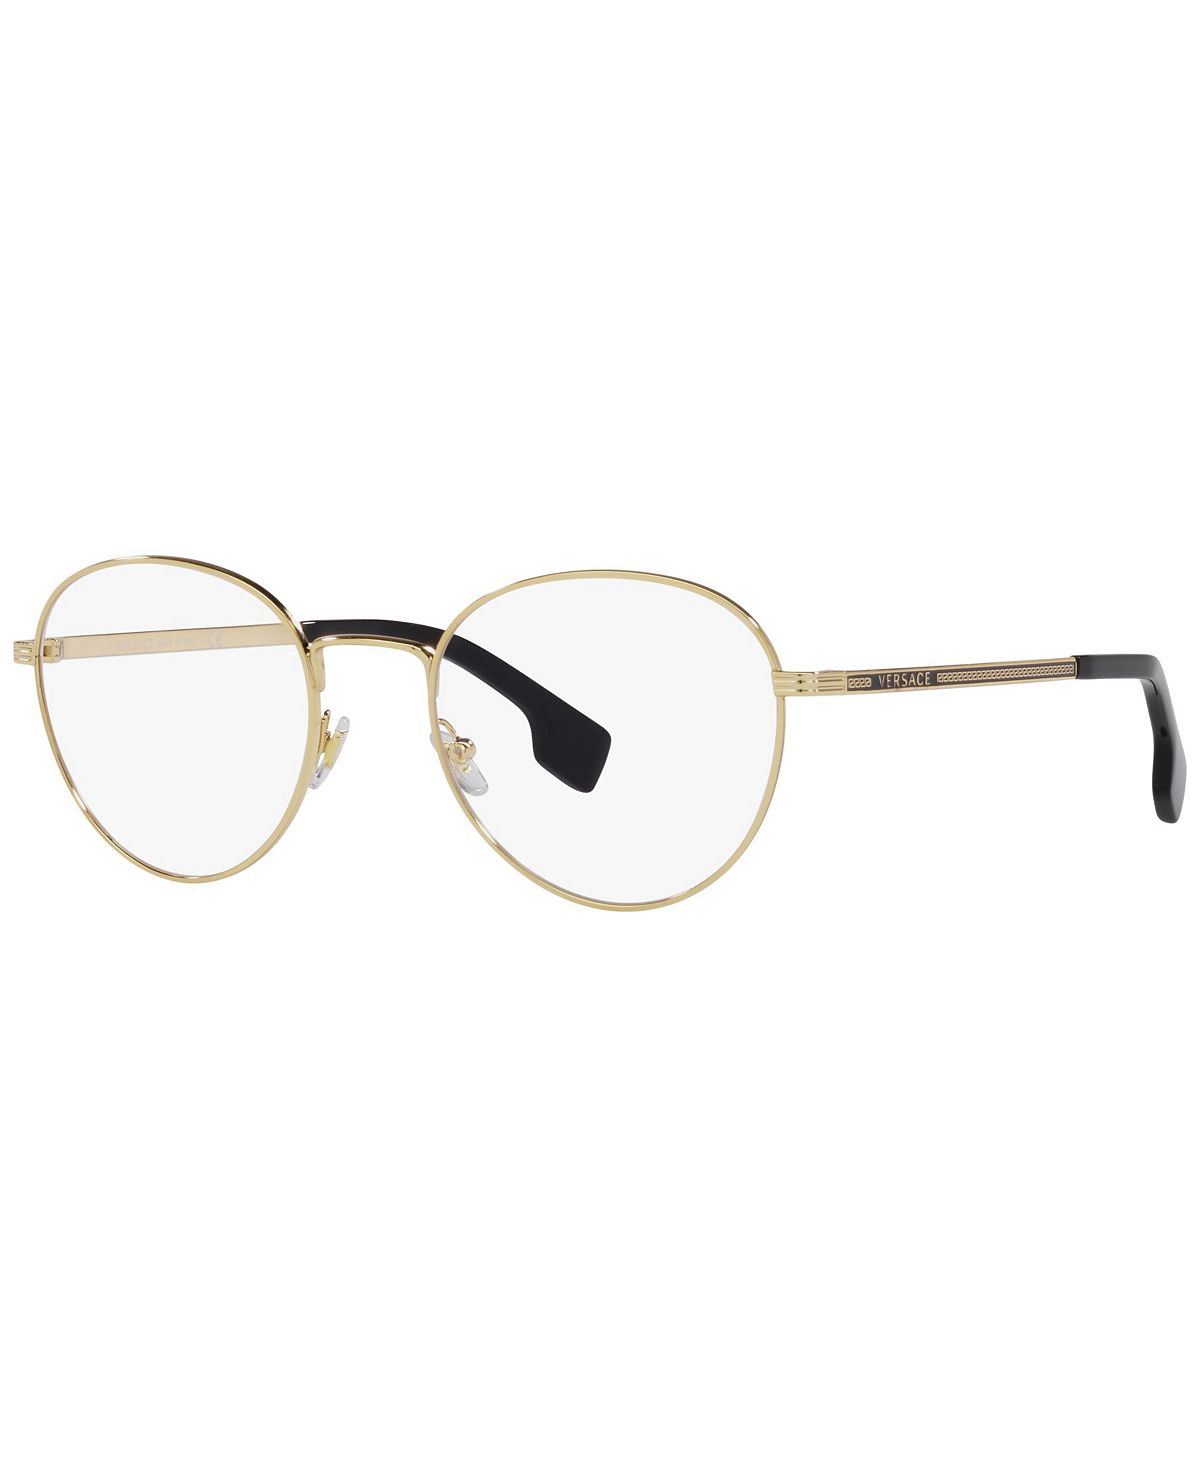 Мужские очки Phantos, VE127953-O Versace цена и фото